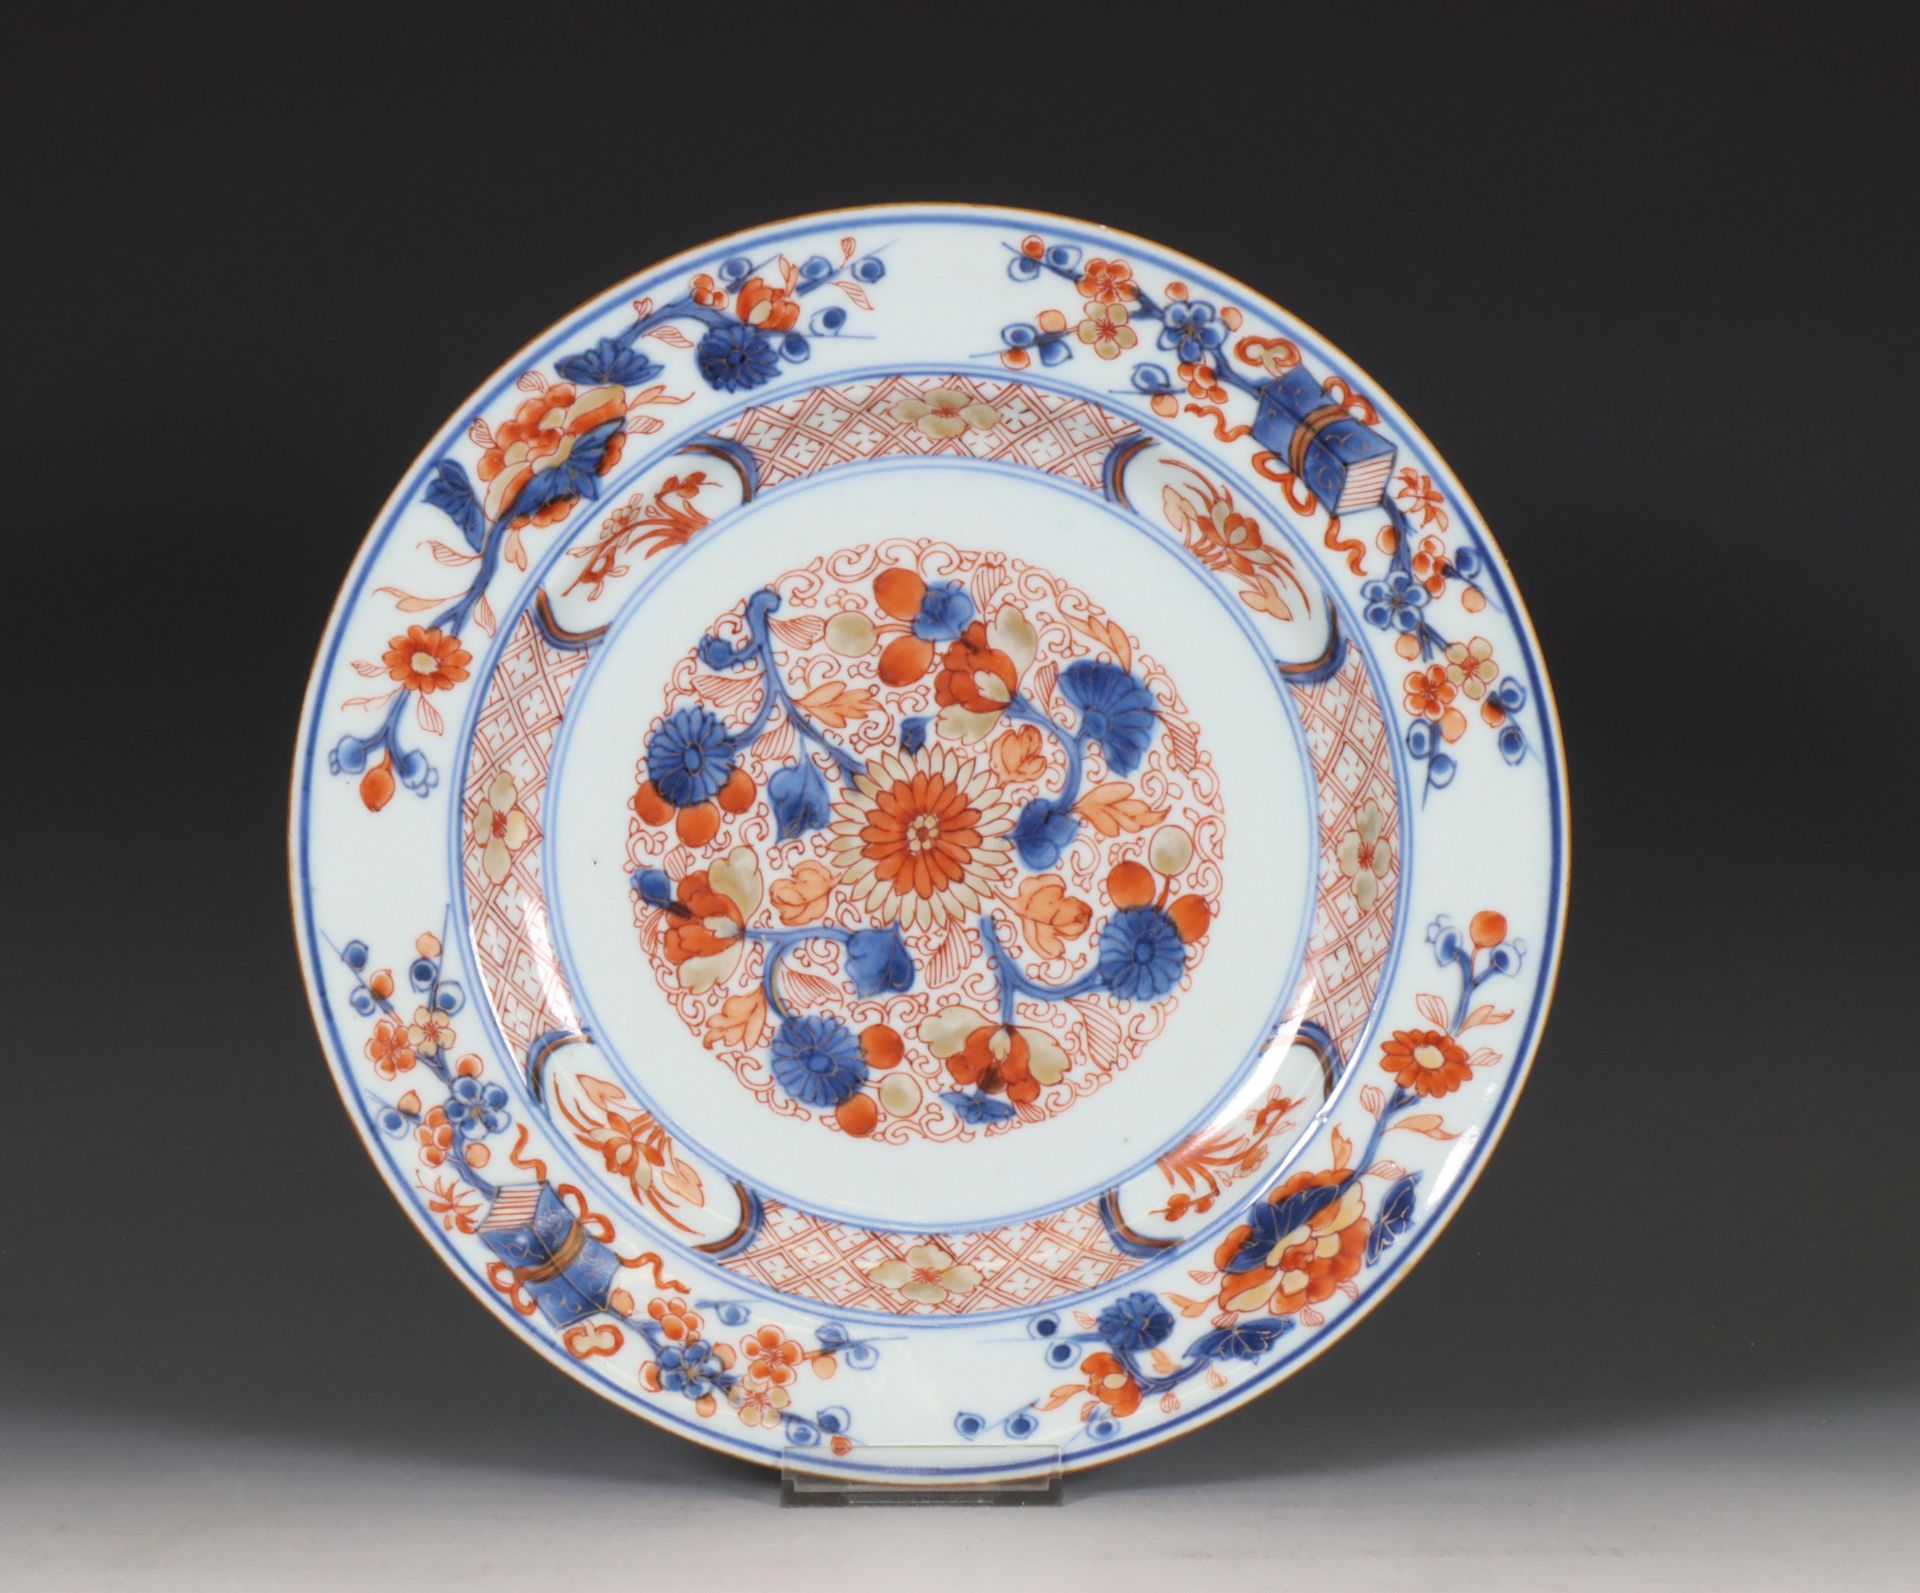 China, Imari porcelain dish, 18th century,